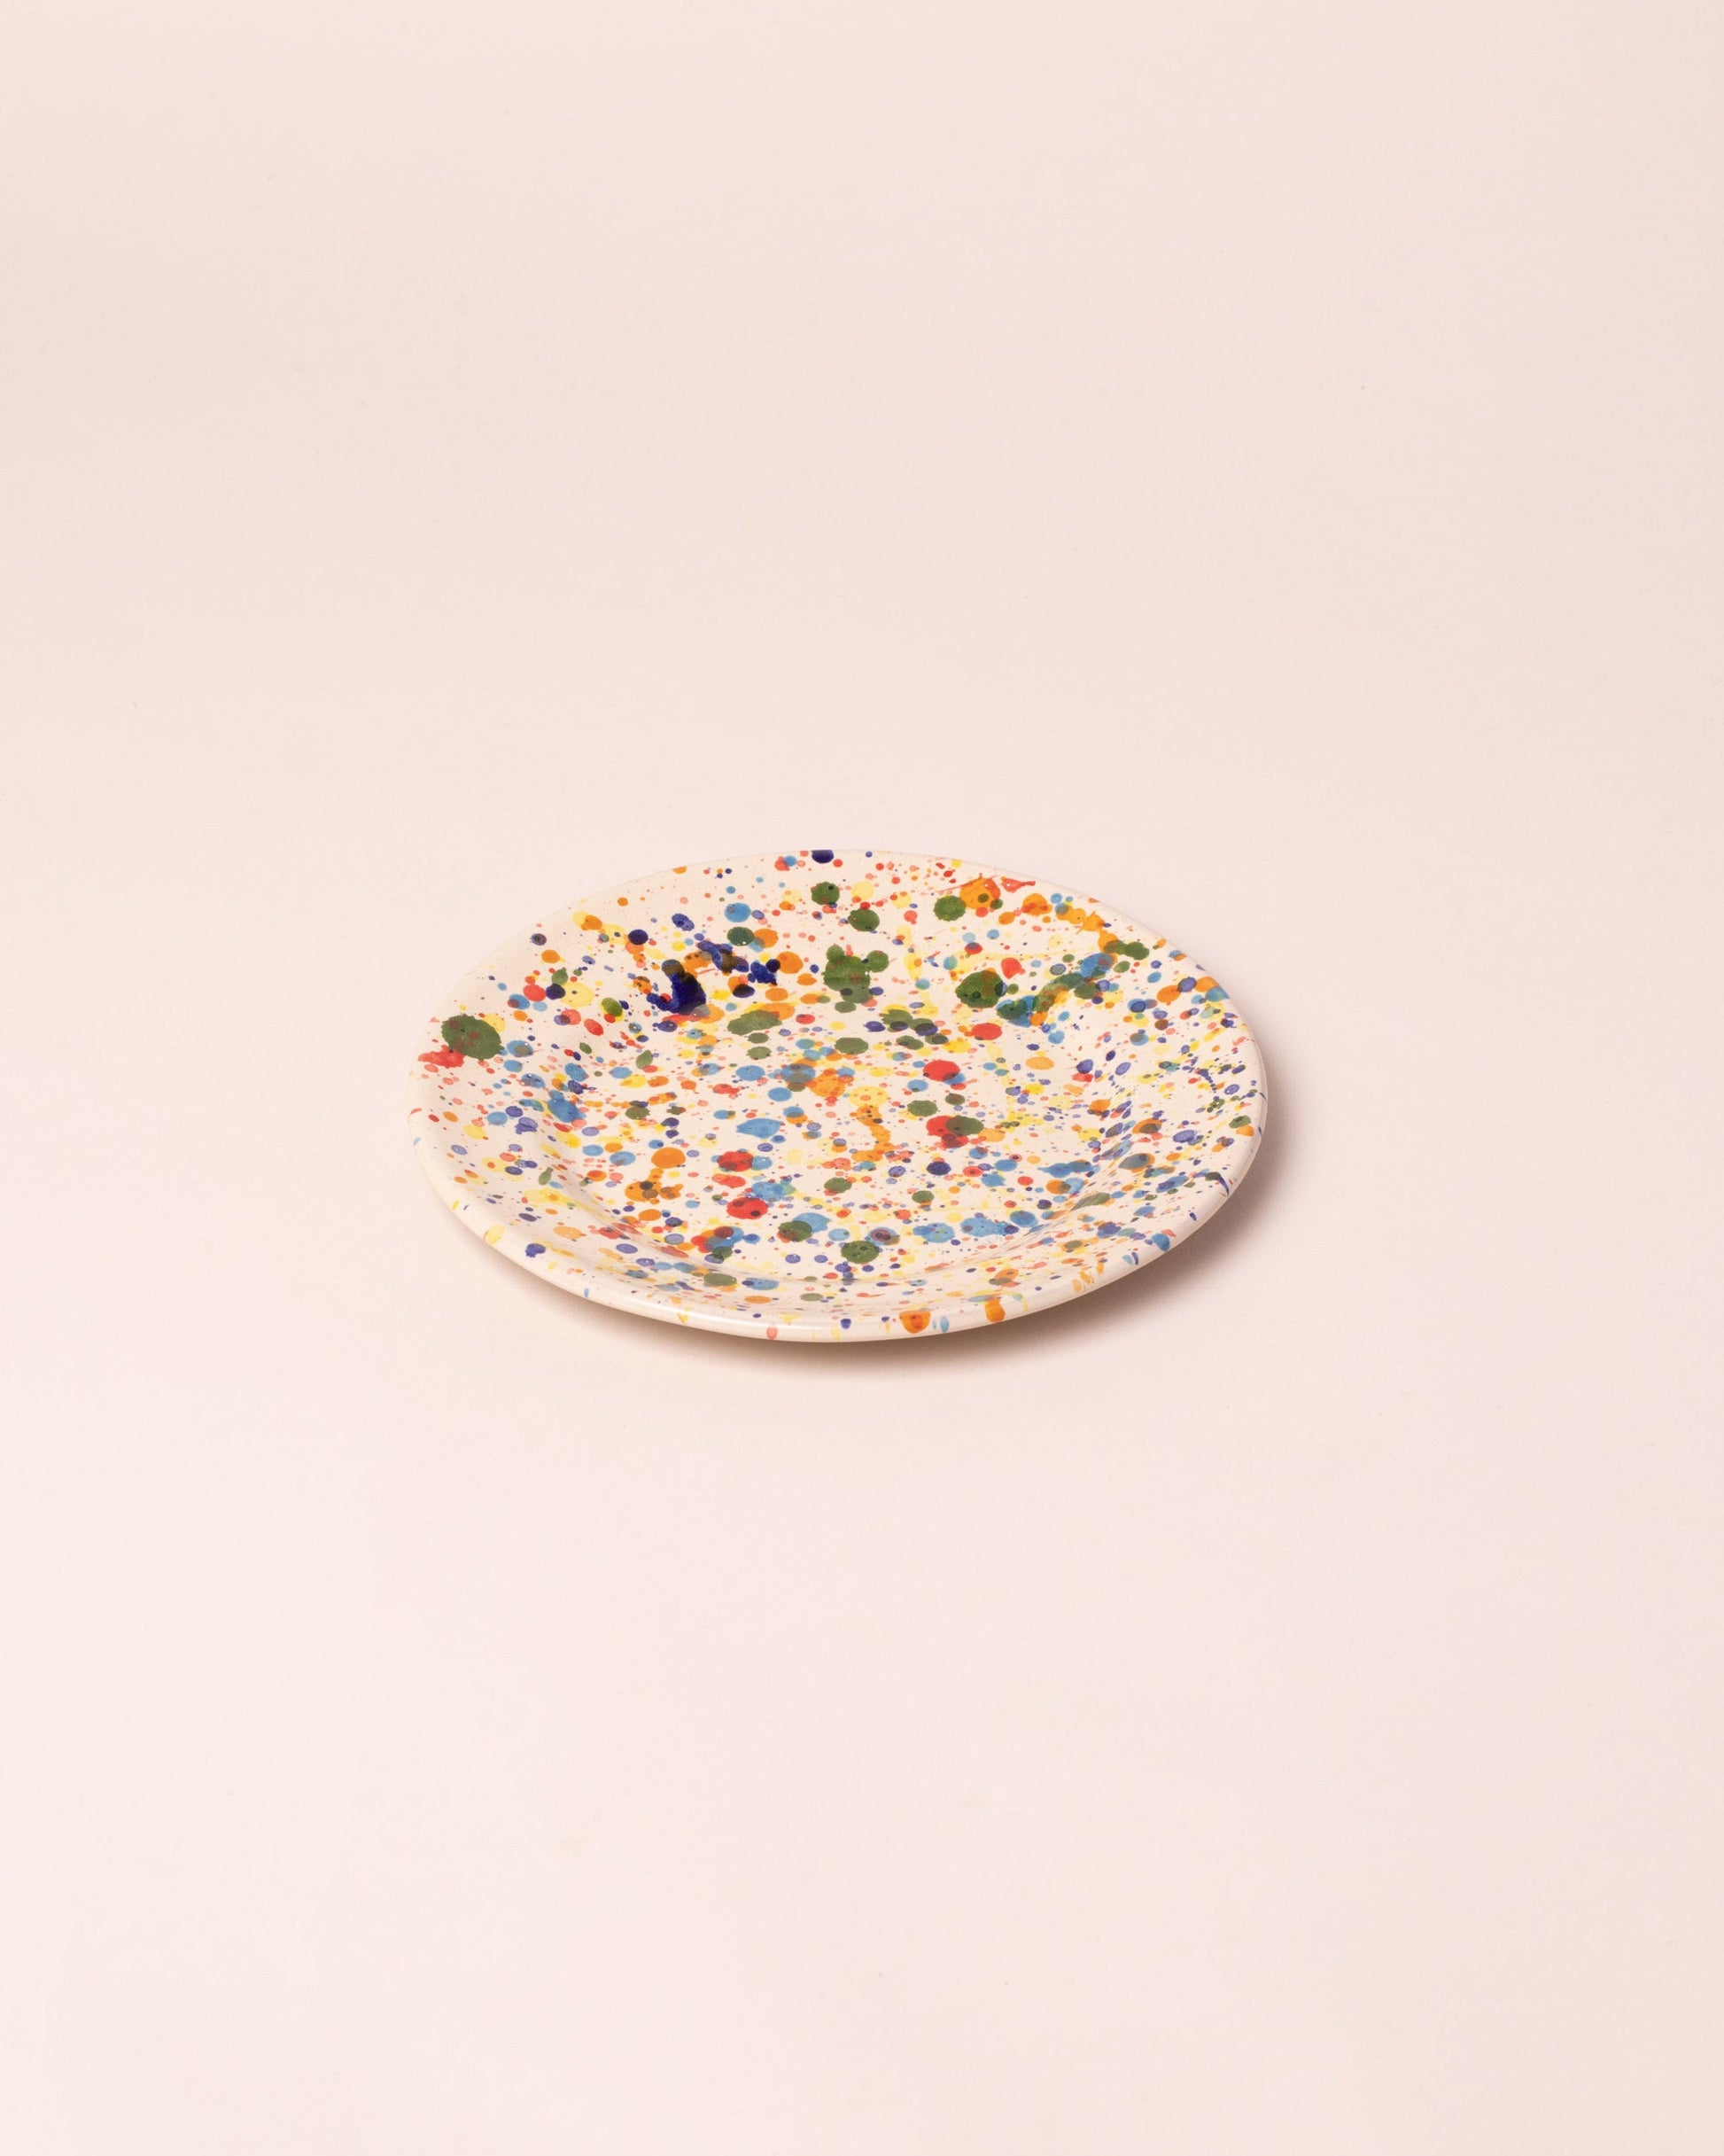 Closeup details of the La Ceramica Vincenzo Del Monaco Colored Drops Dessert Dish on light color background.